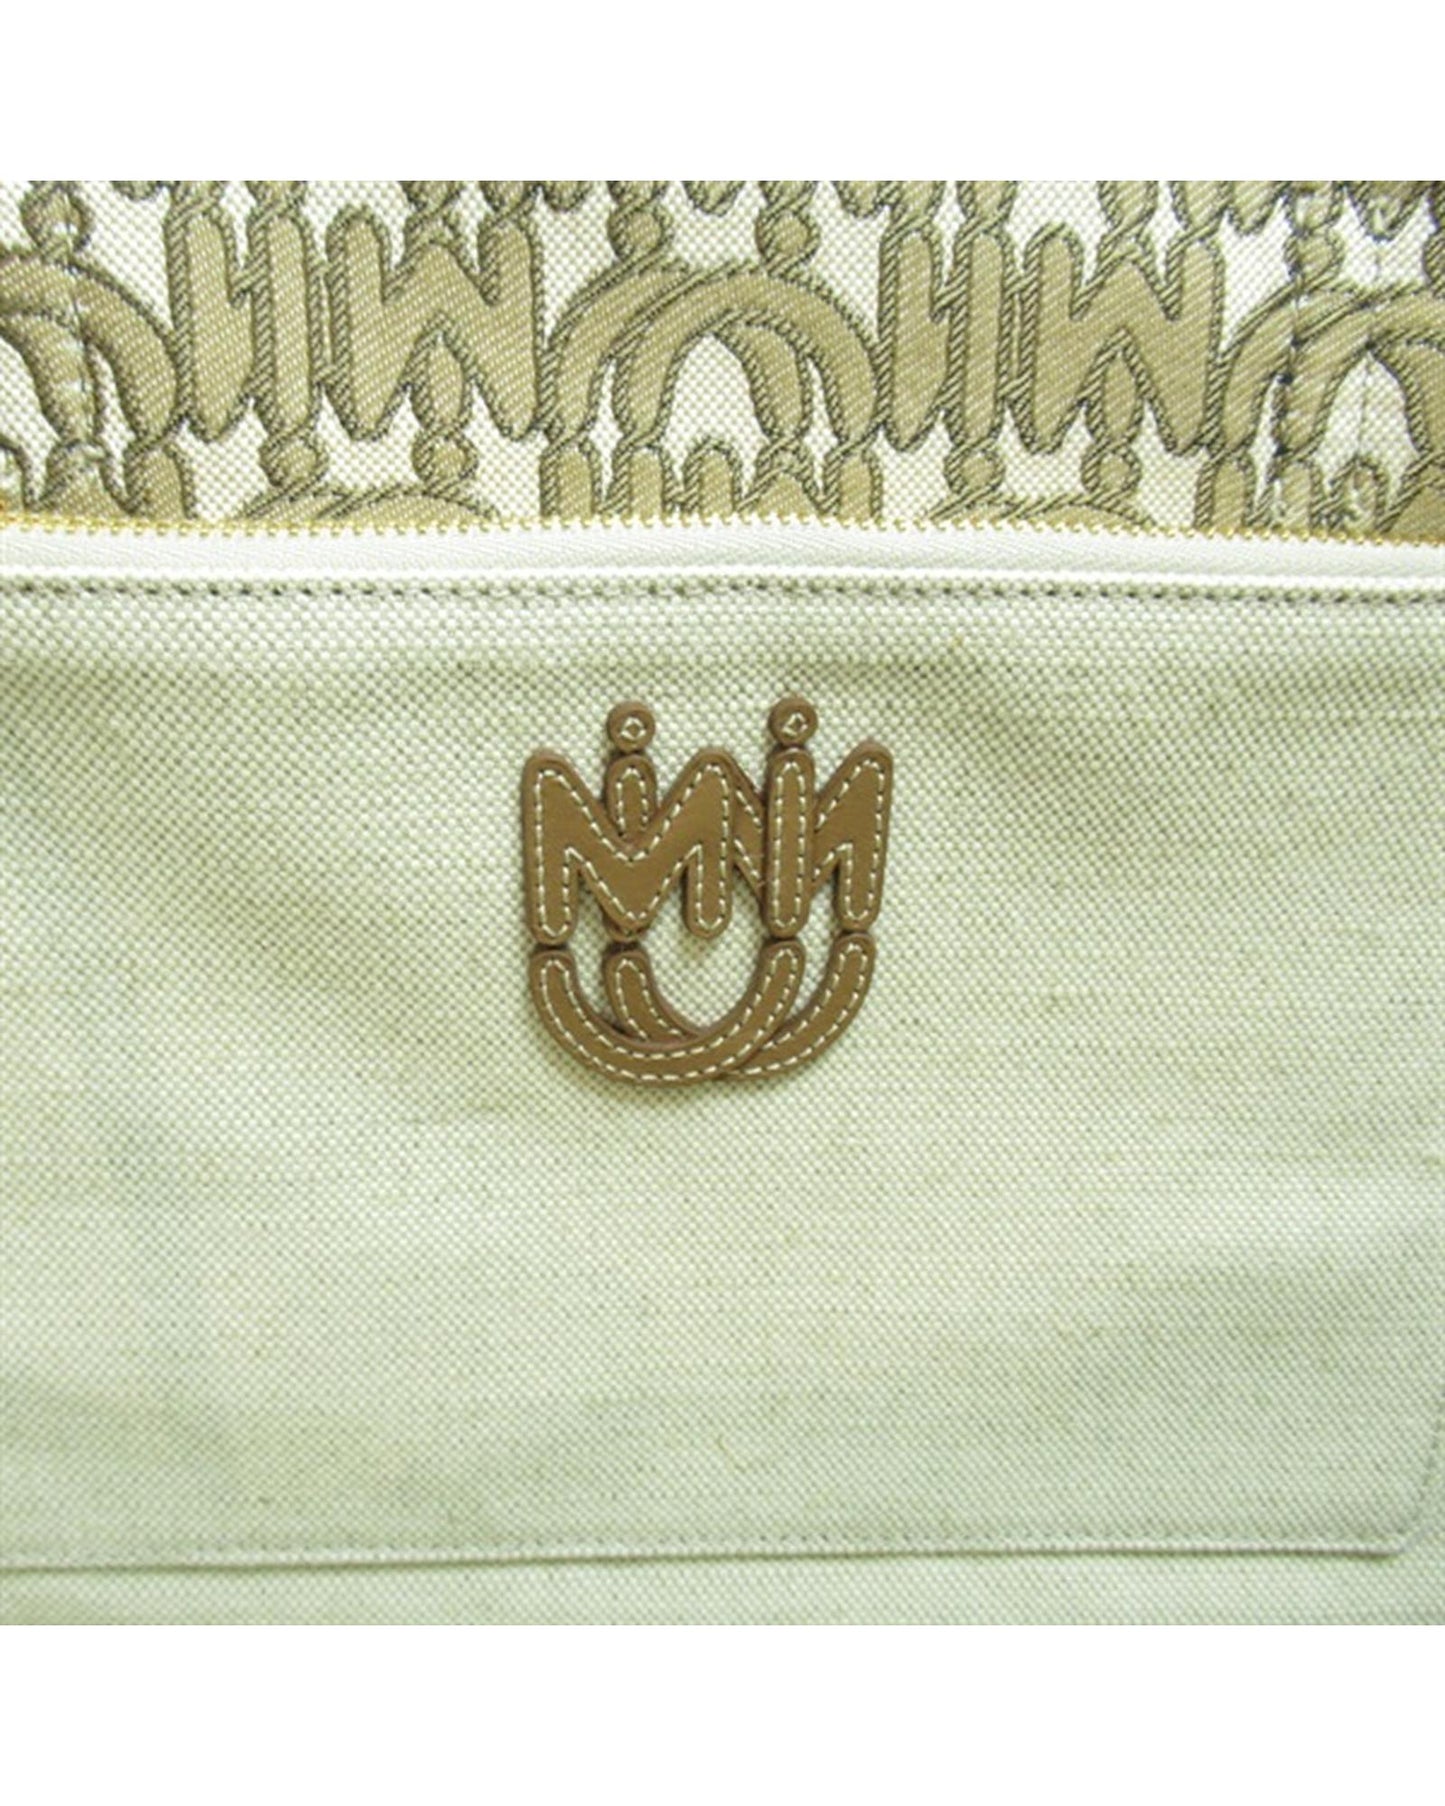 Miu Miu Women's Brown Jacquard Logo Tote Bag in Brown